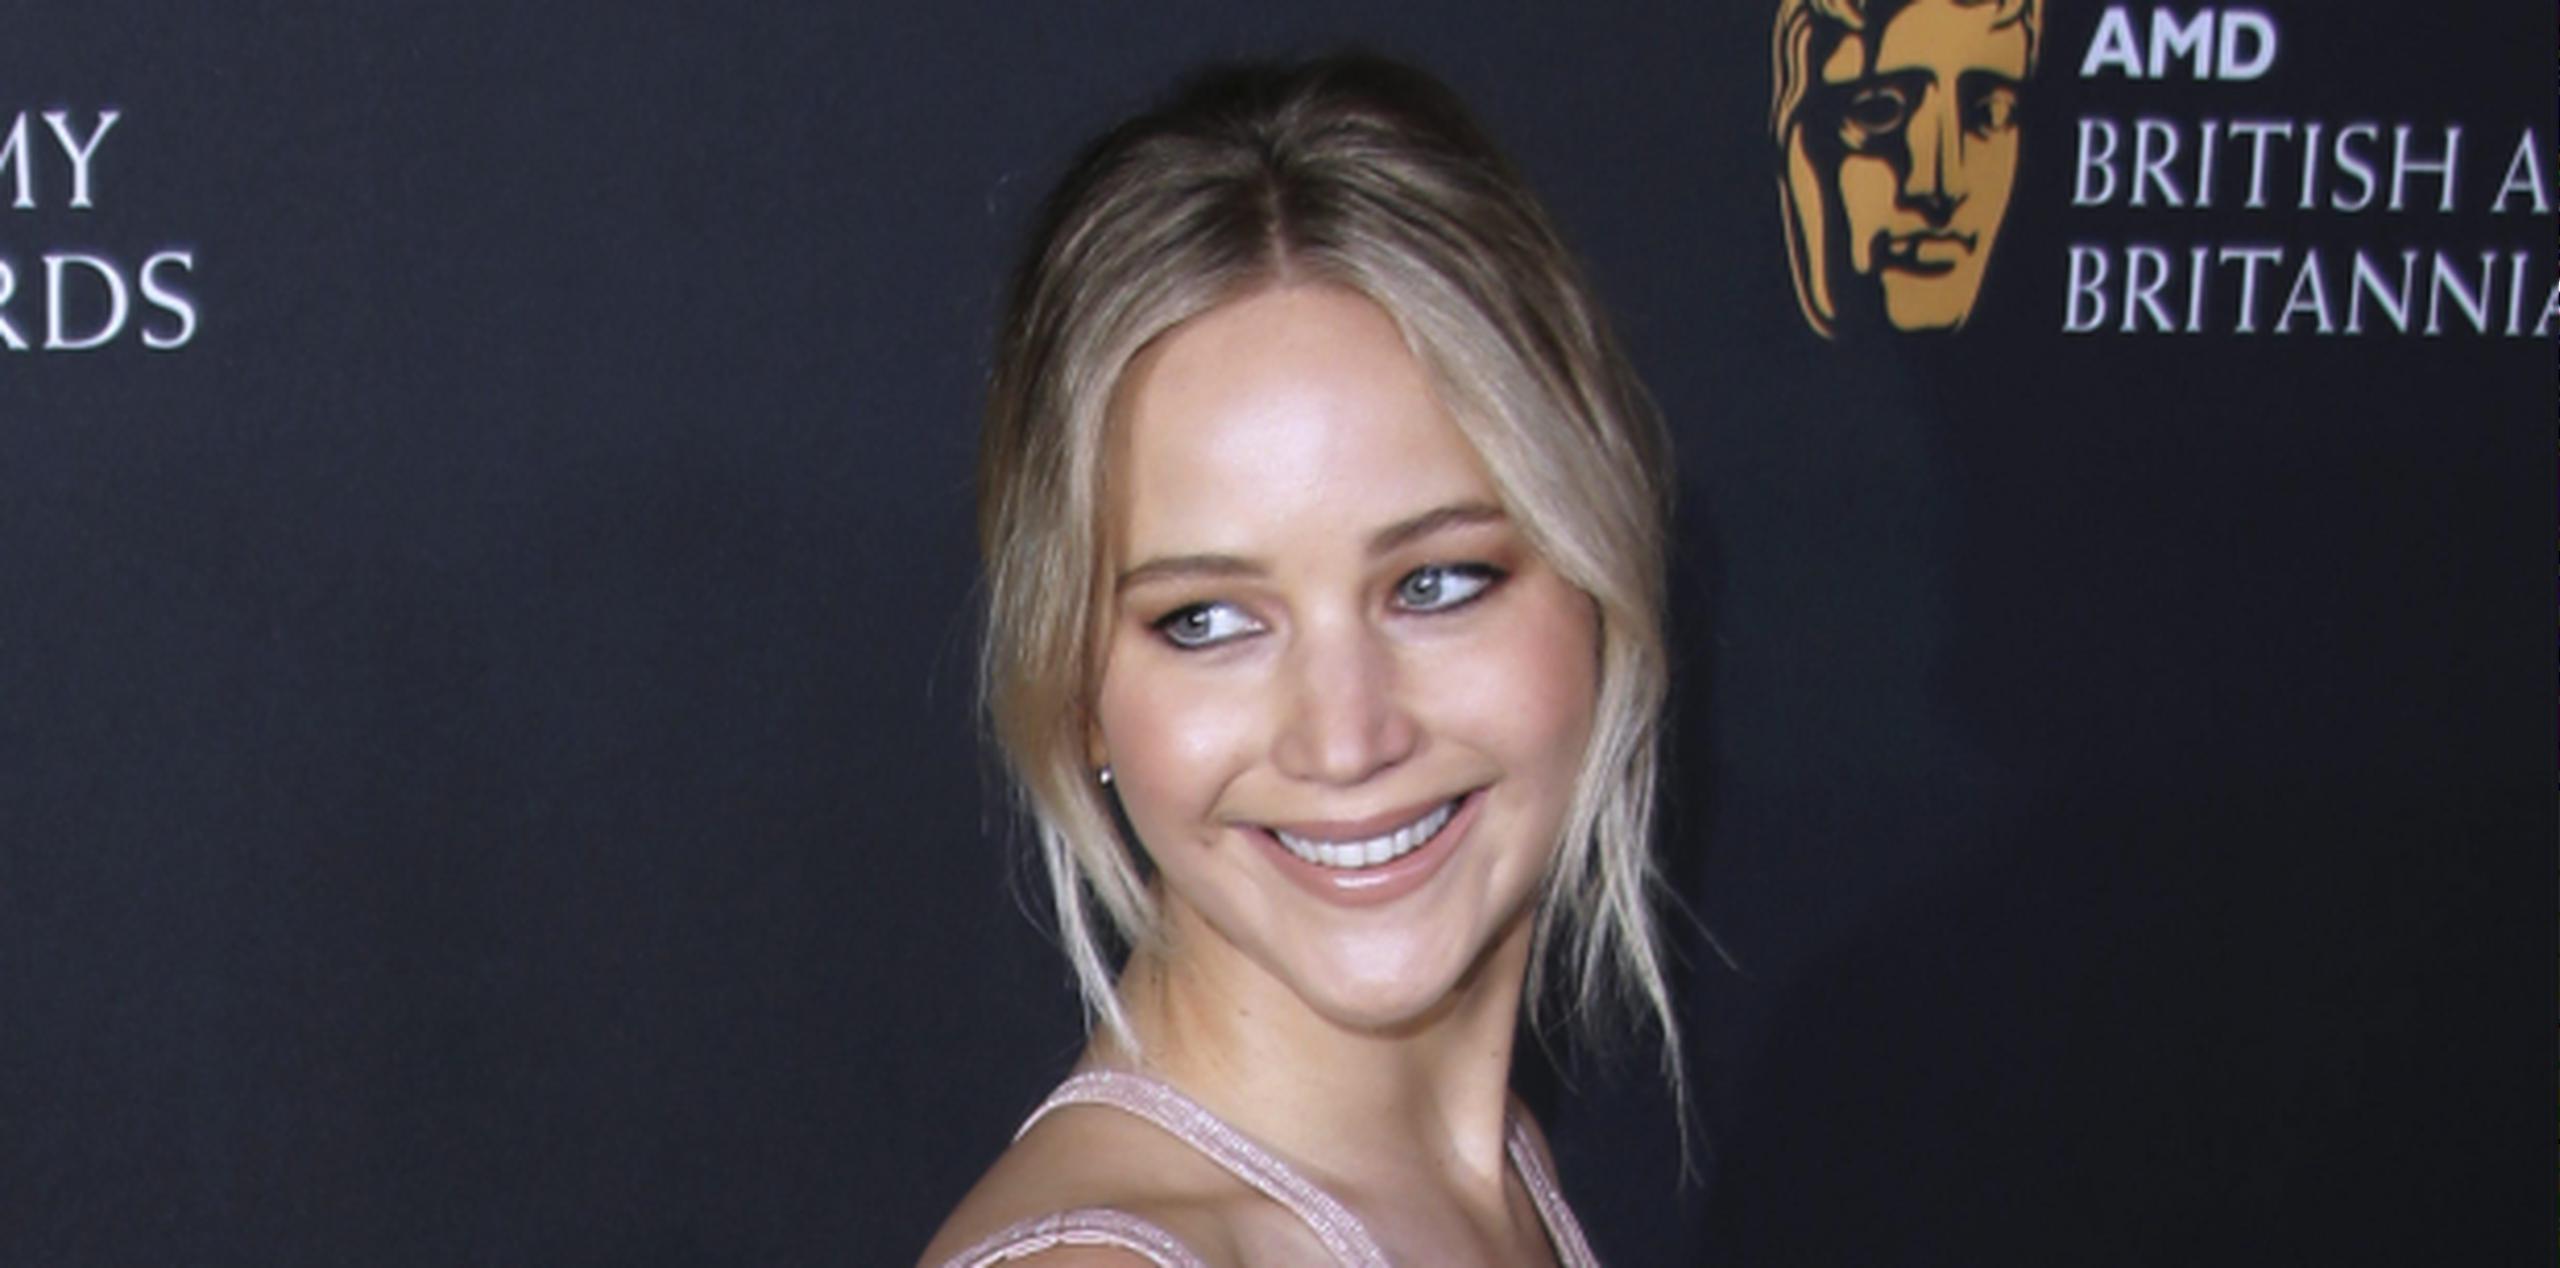 La actriz Jennifer Lawrence ha asegurado que el hecho es una "flagrante violación de la privacidad". (EFE / EPA / Mike Nelson)